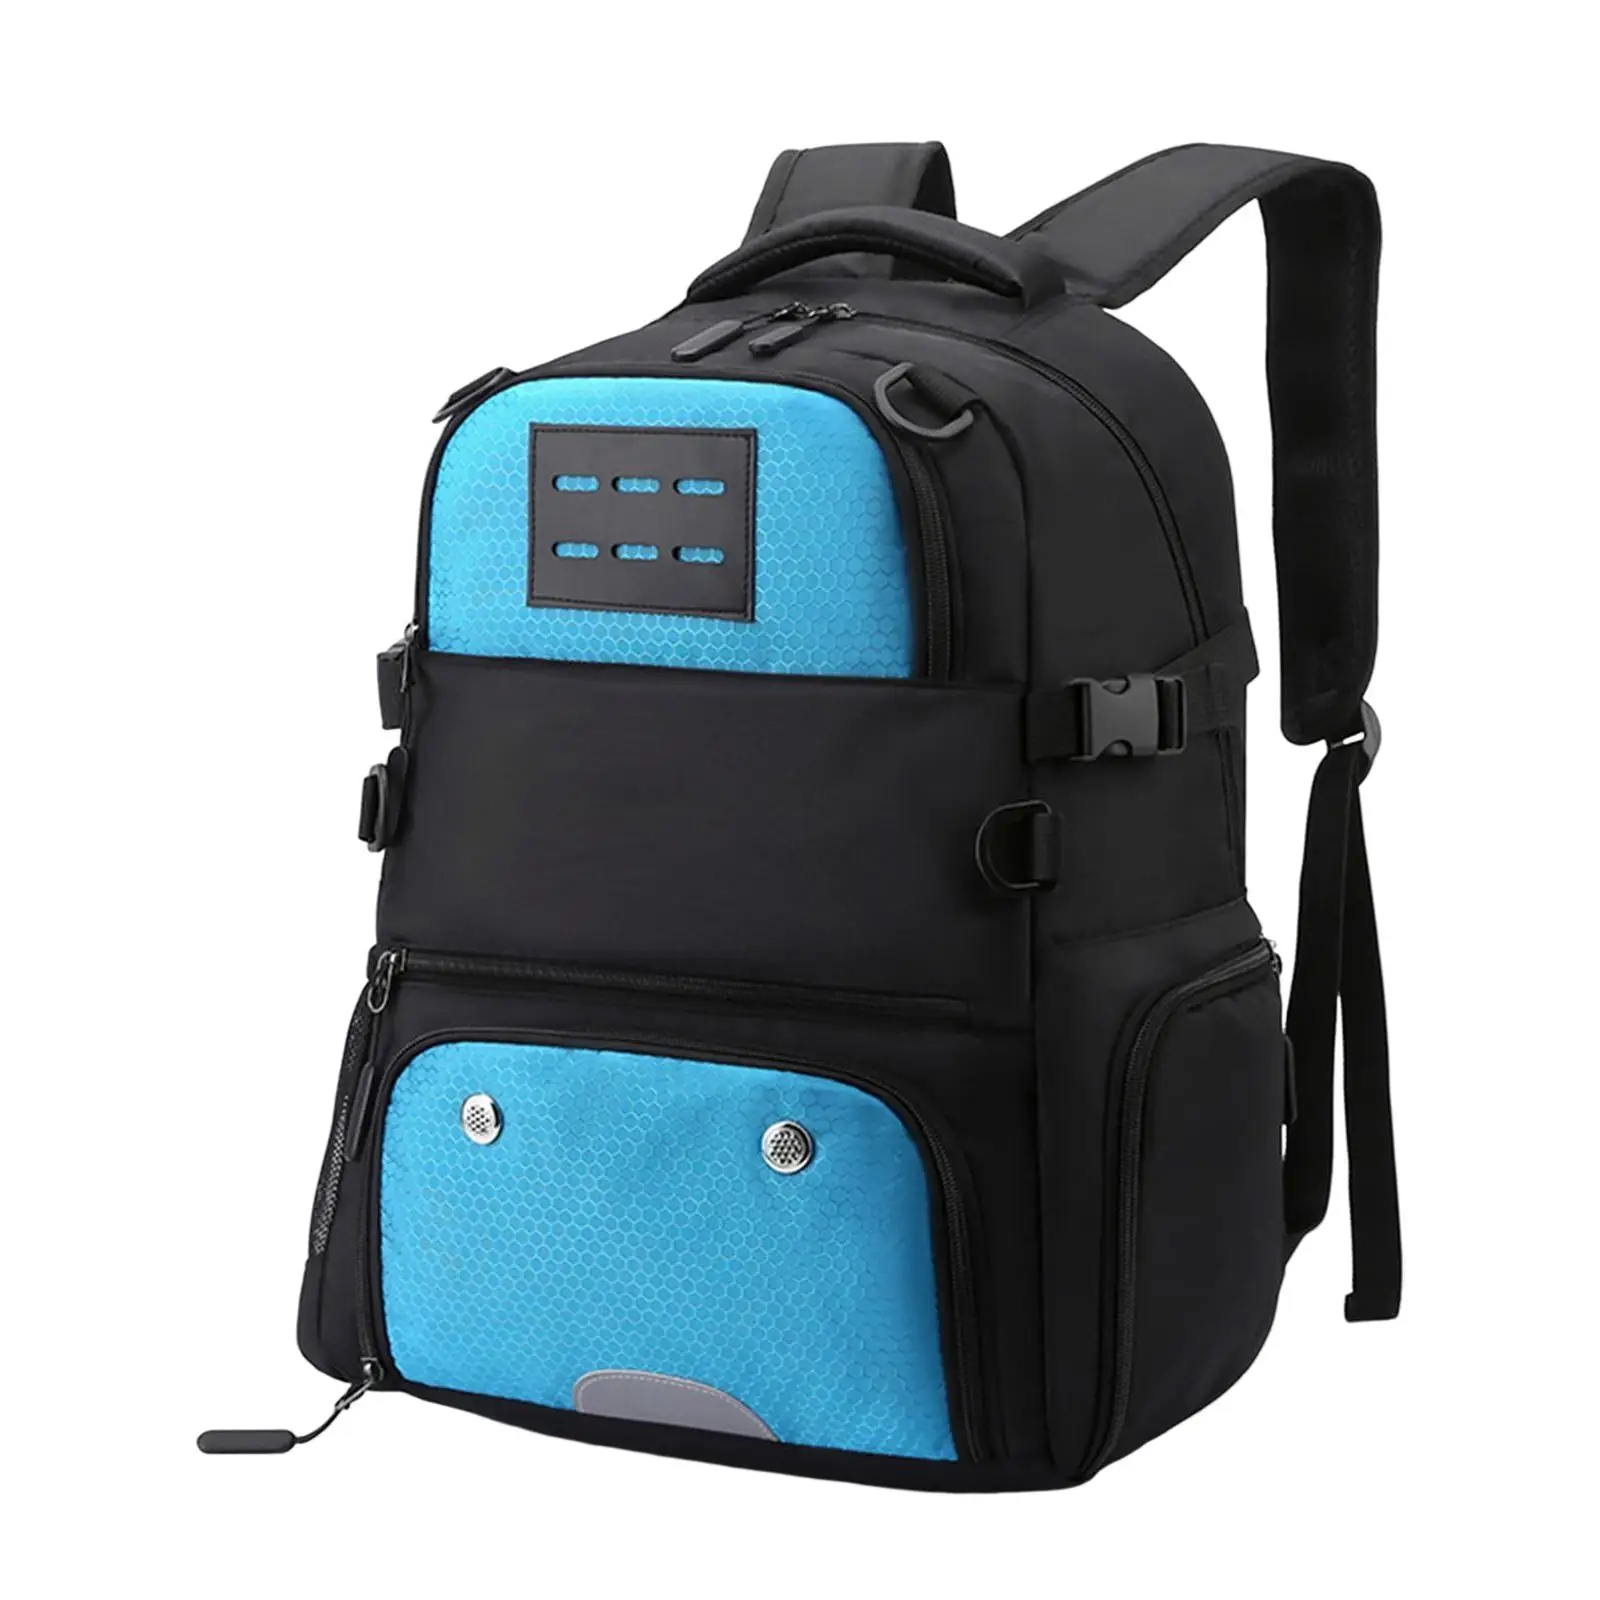 Баскетбольный футбольный рюкзак для путешествий с нижним отделением для мячей, рюкзак для футбола, сумка для волейбола, все виды спорта, школа на открытом воздухе5